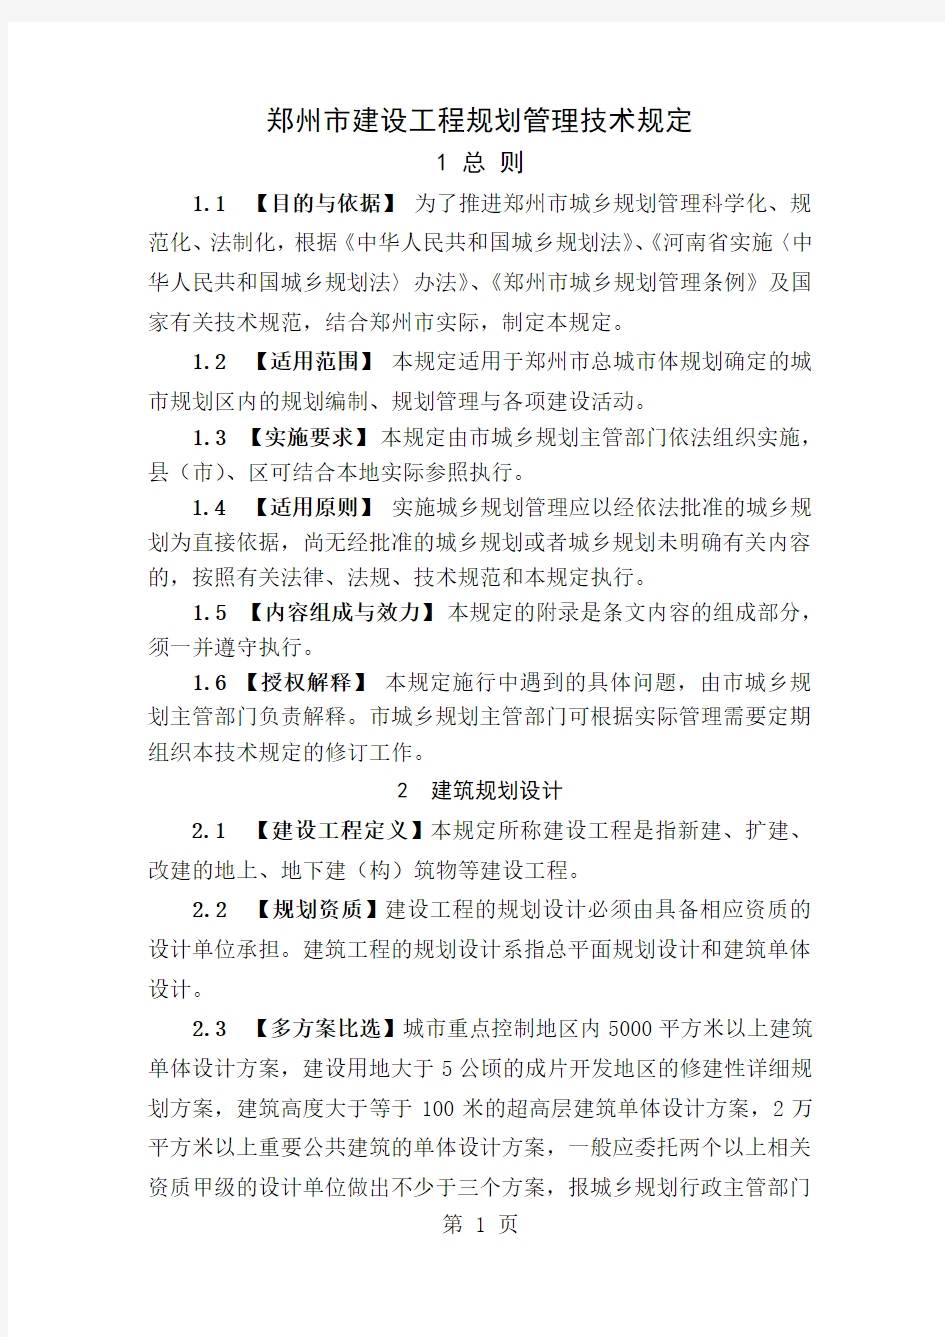 2019郑州市建设工程规划管理技术规定-25页精选文档